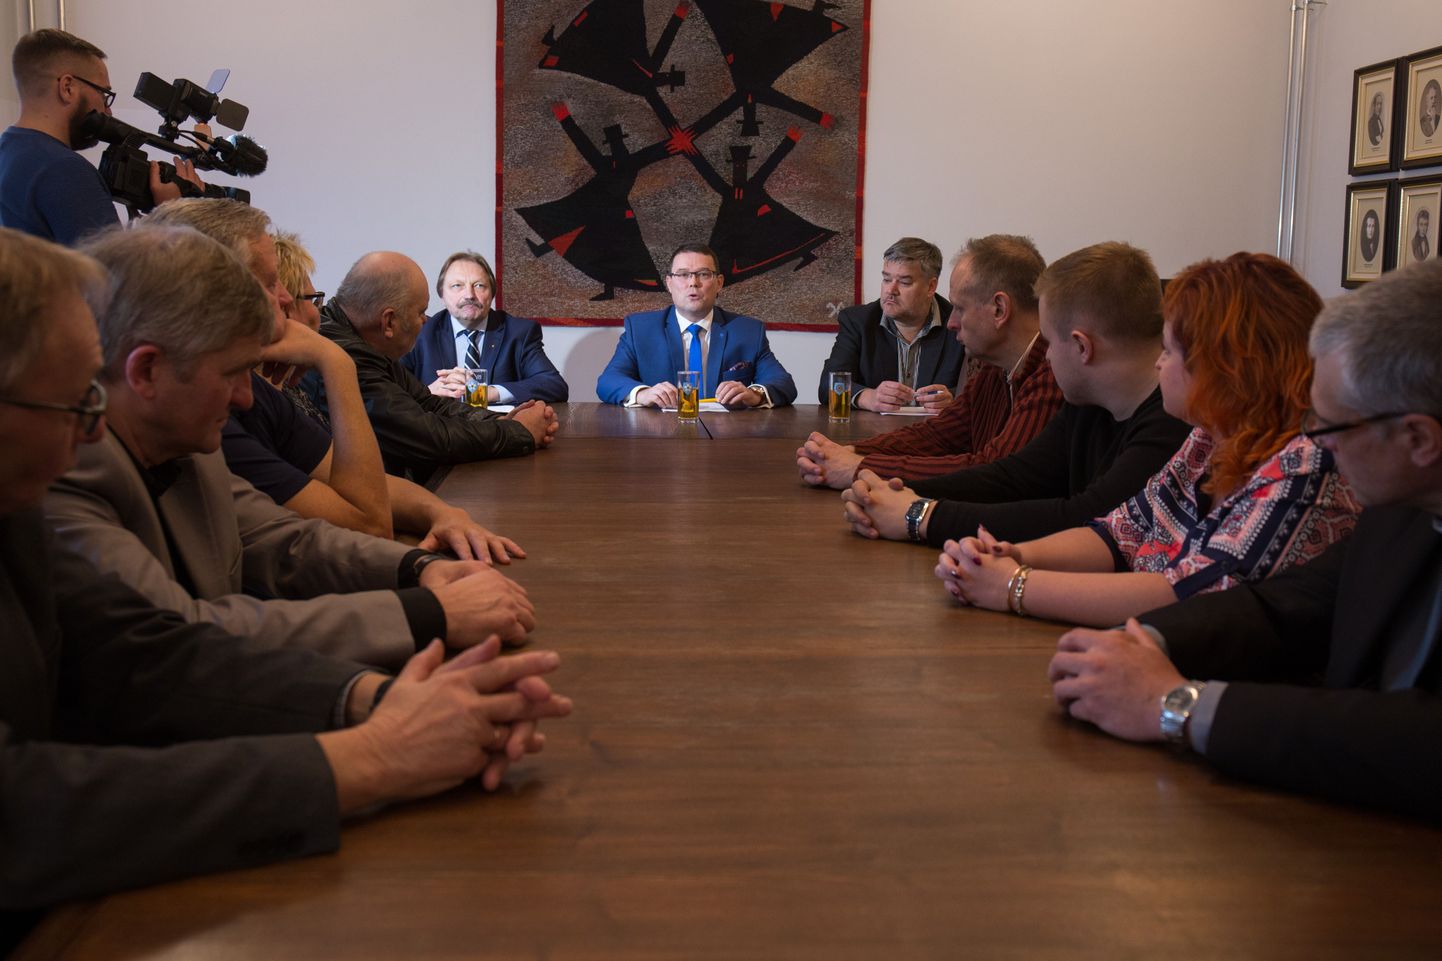 Uue võimuliidu esindajad kogunesid pühapäeval kell 15 raekotta koalitsioonilepingut allkirjastama. Laua otsas istusid Helmut Hallemaa (vasakul), Madis Timpson ja Harri Juhani Aaltonen.